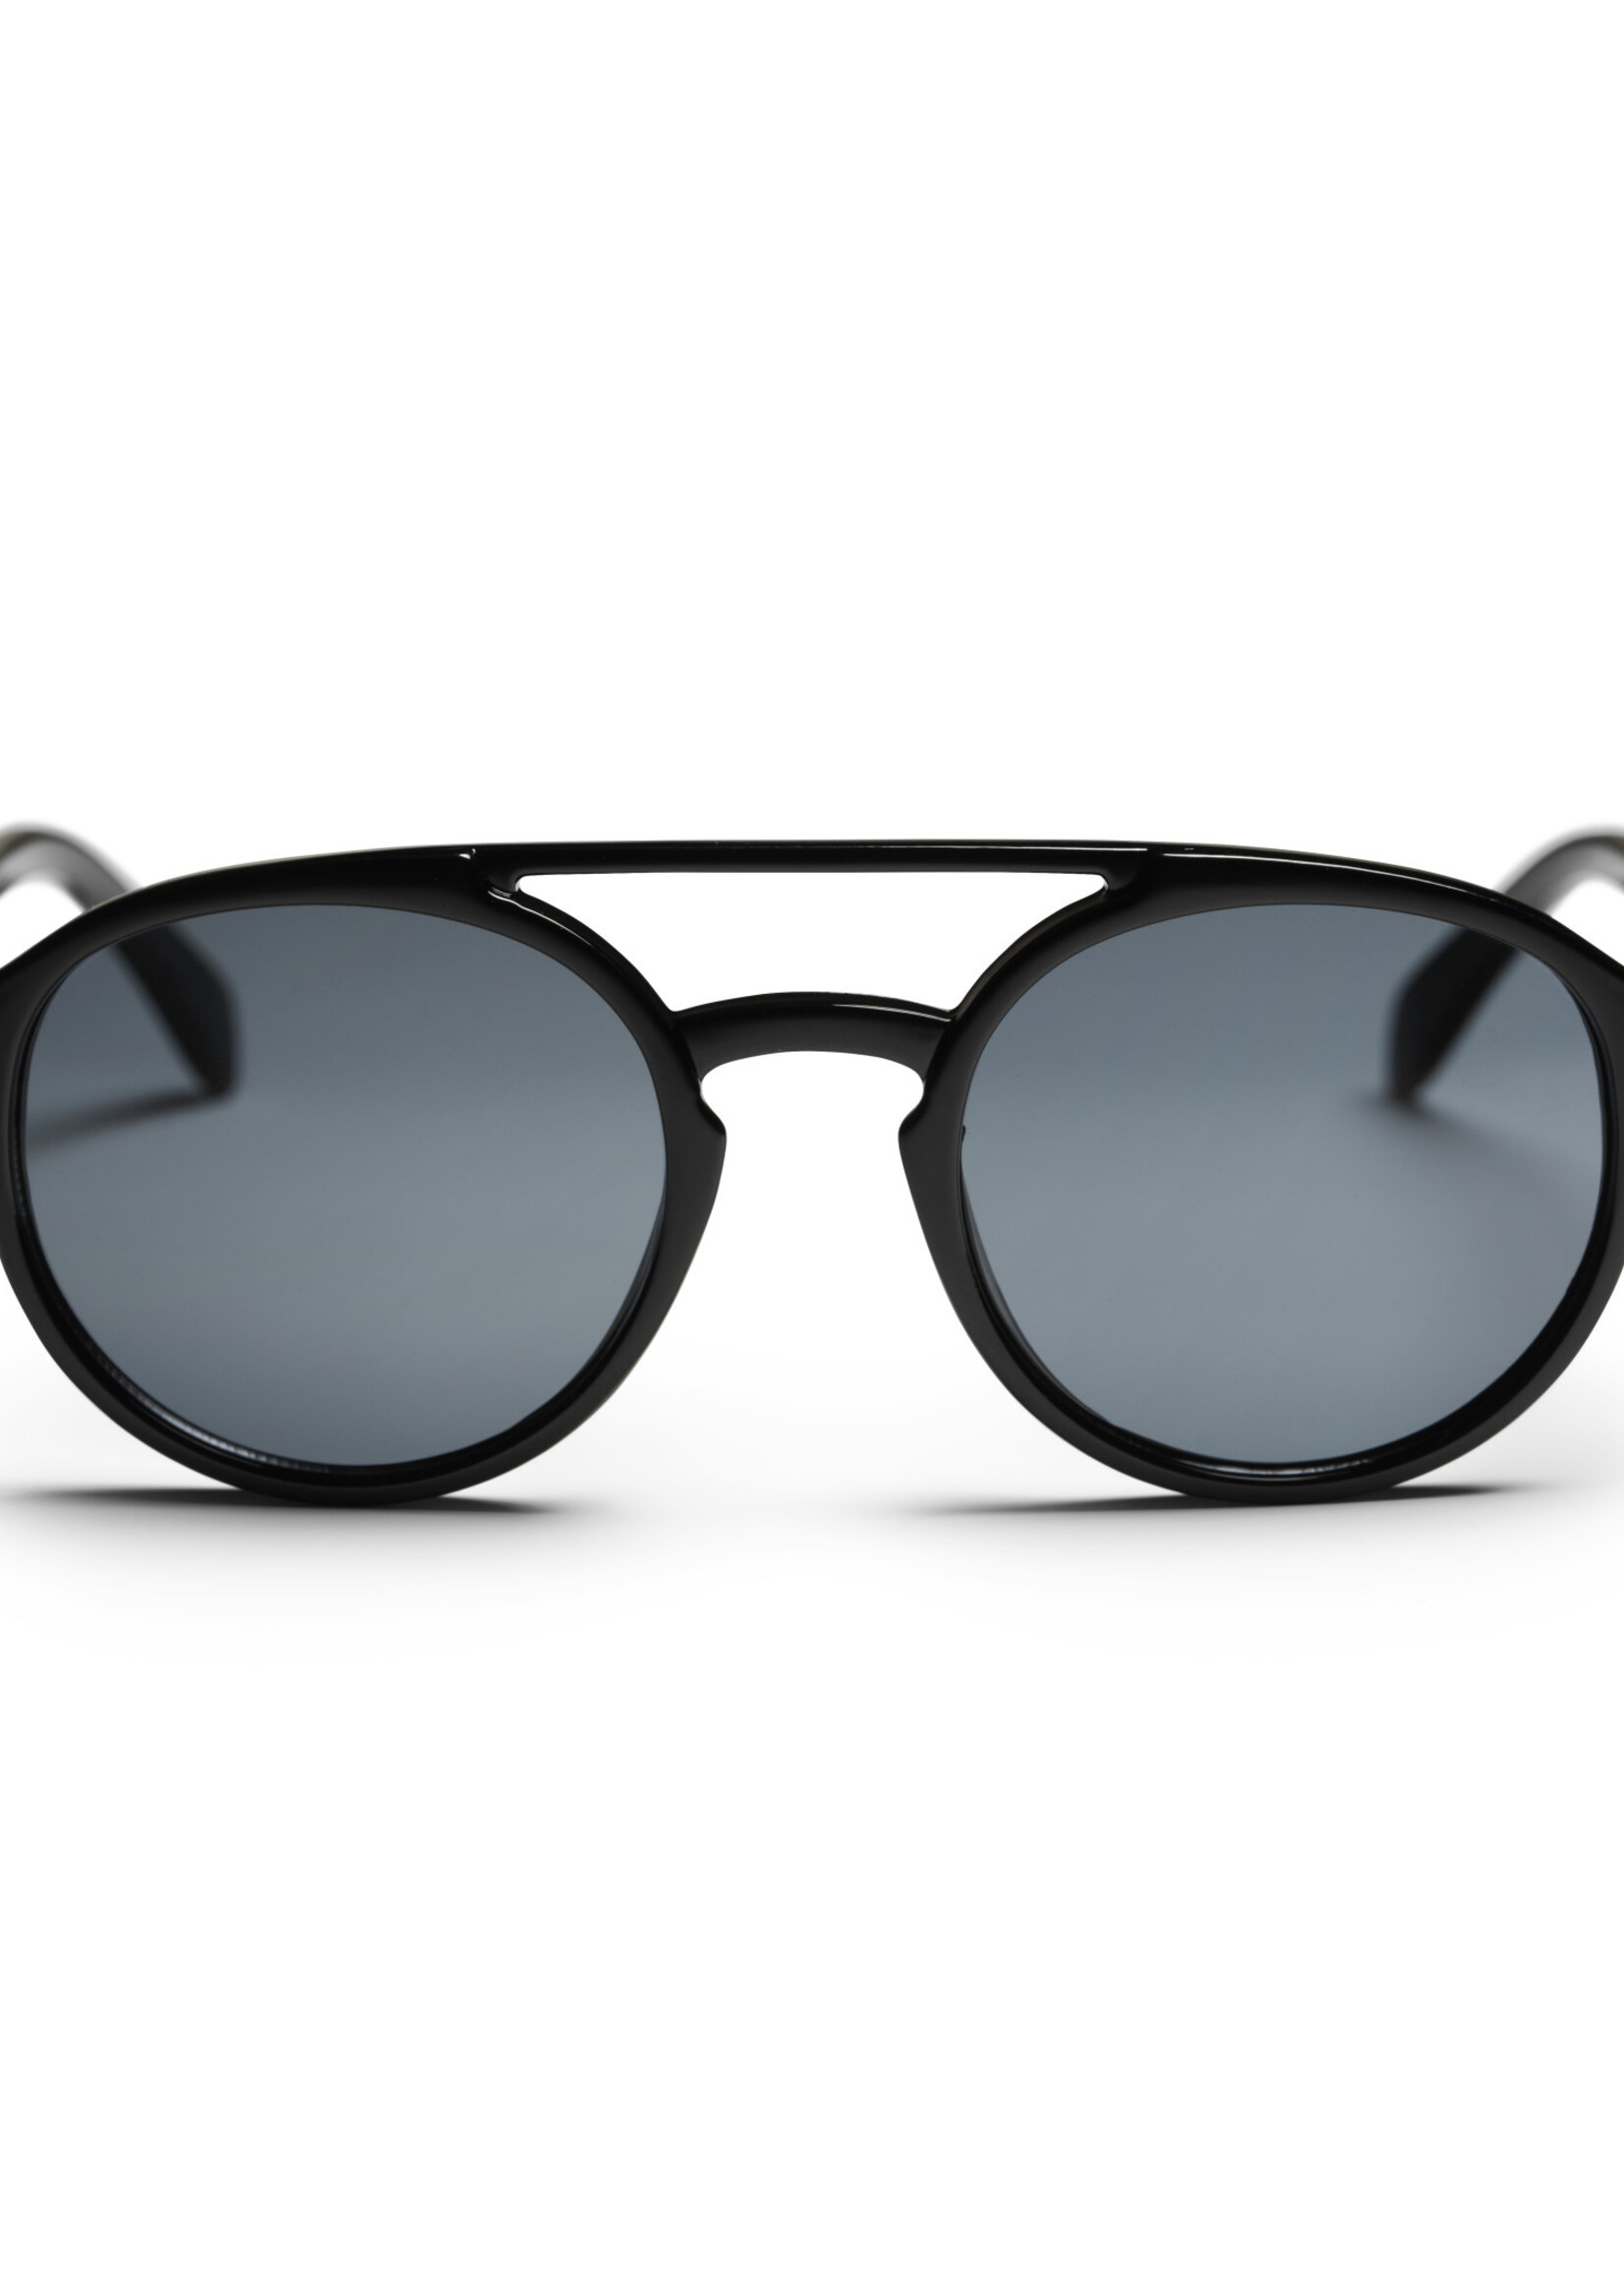 CHPO Brand Sunglasses Helsinki Black